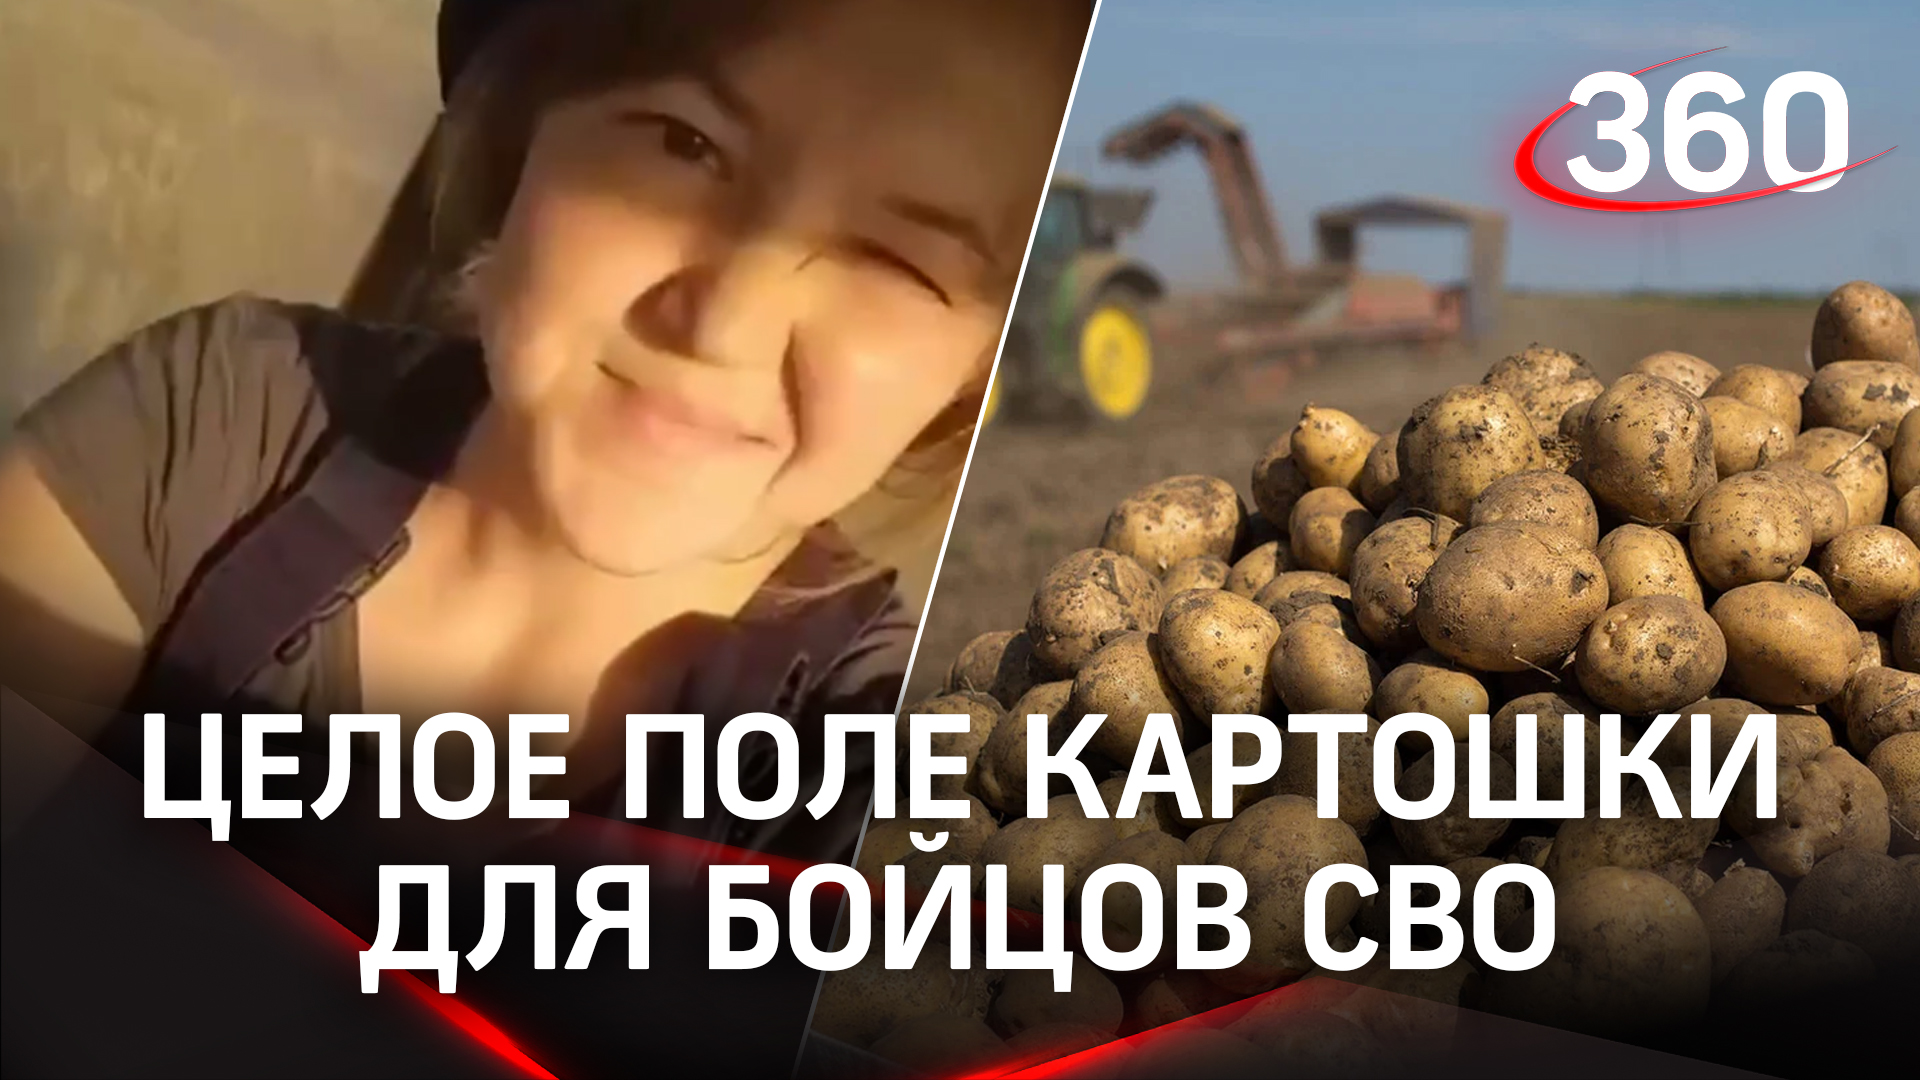 Жительница Башкирии вместе с односельчанами засадила целое поле картошки для бойцов СВО